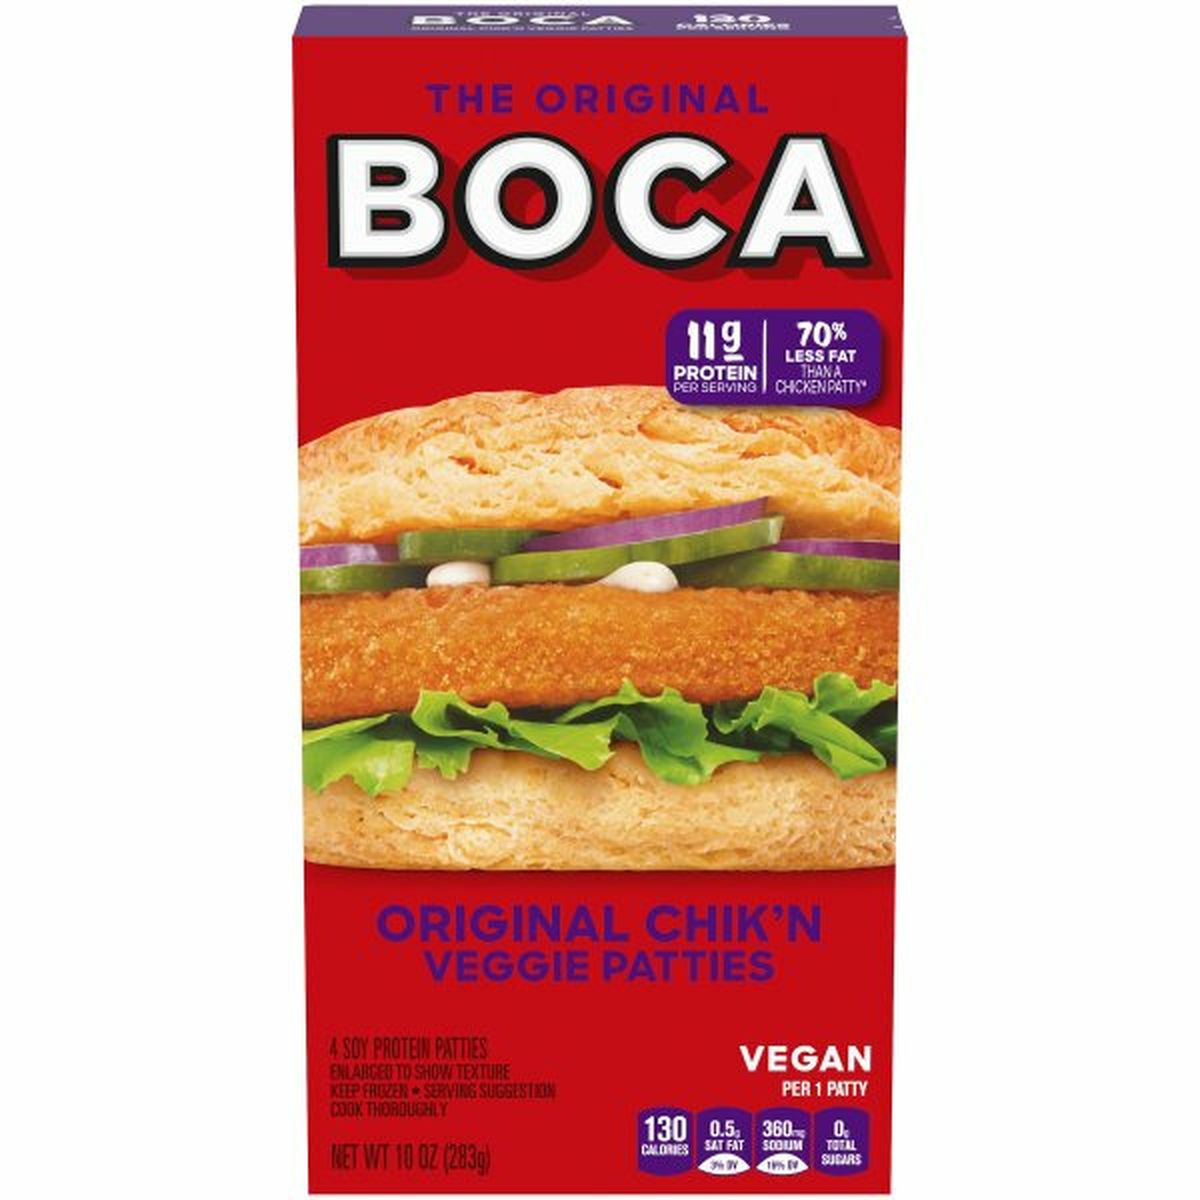 Calories in Boca Original Chik'n Vegan Patties